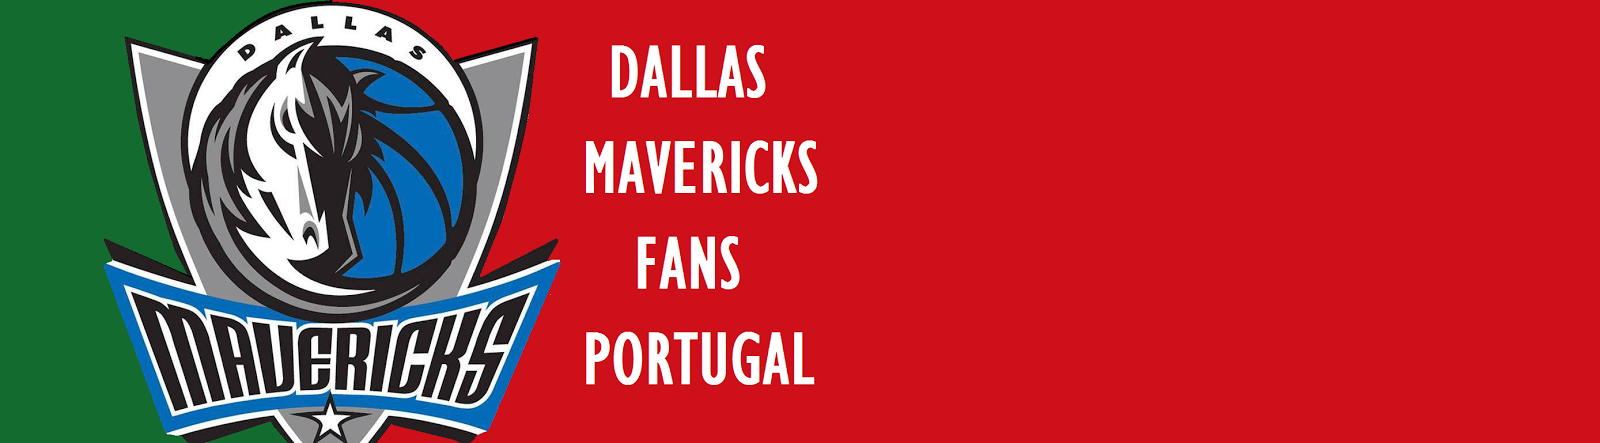 Dallas Mavericks - Fans Portugal